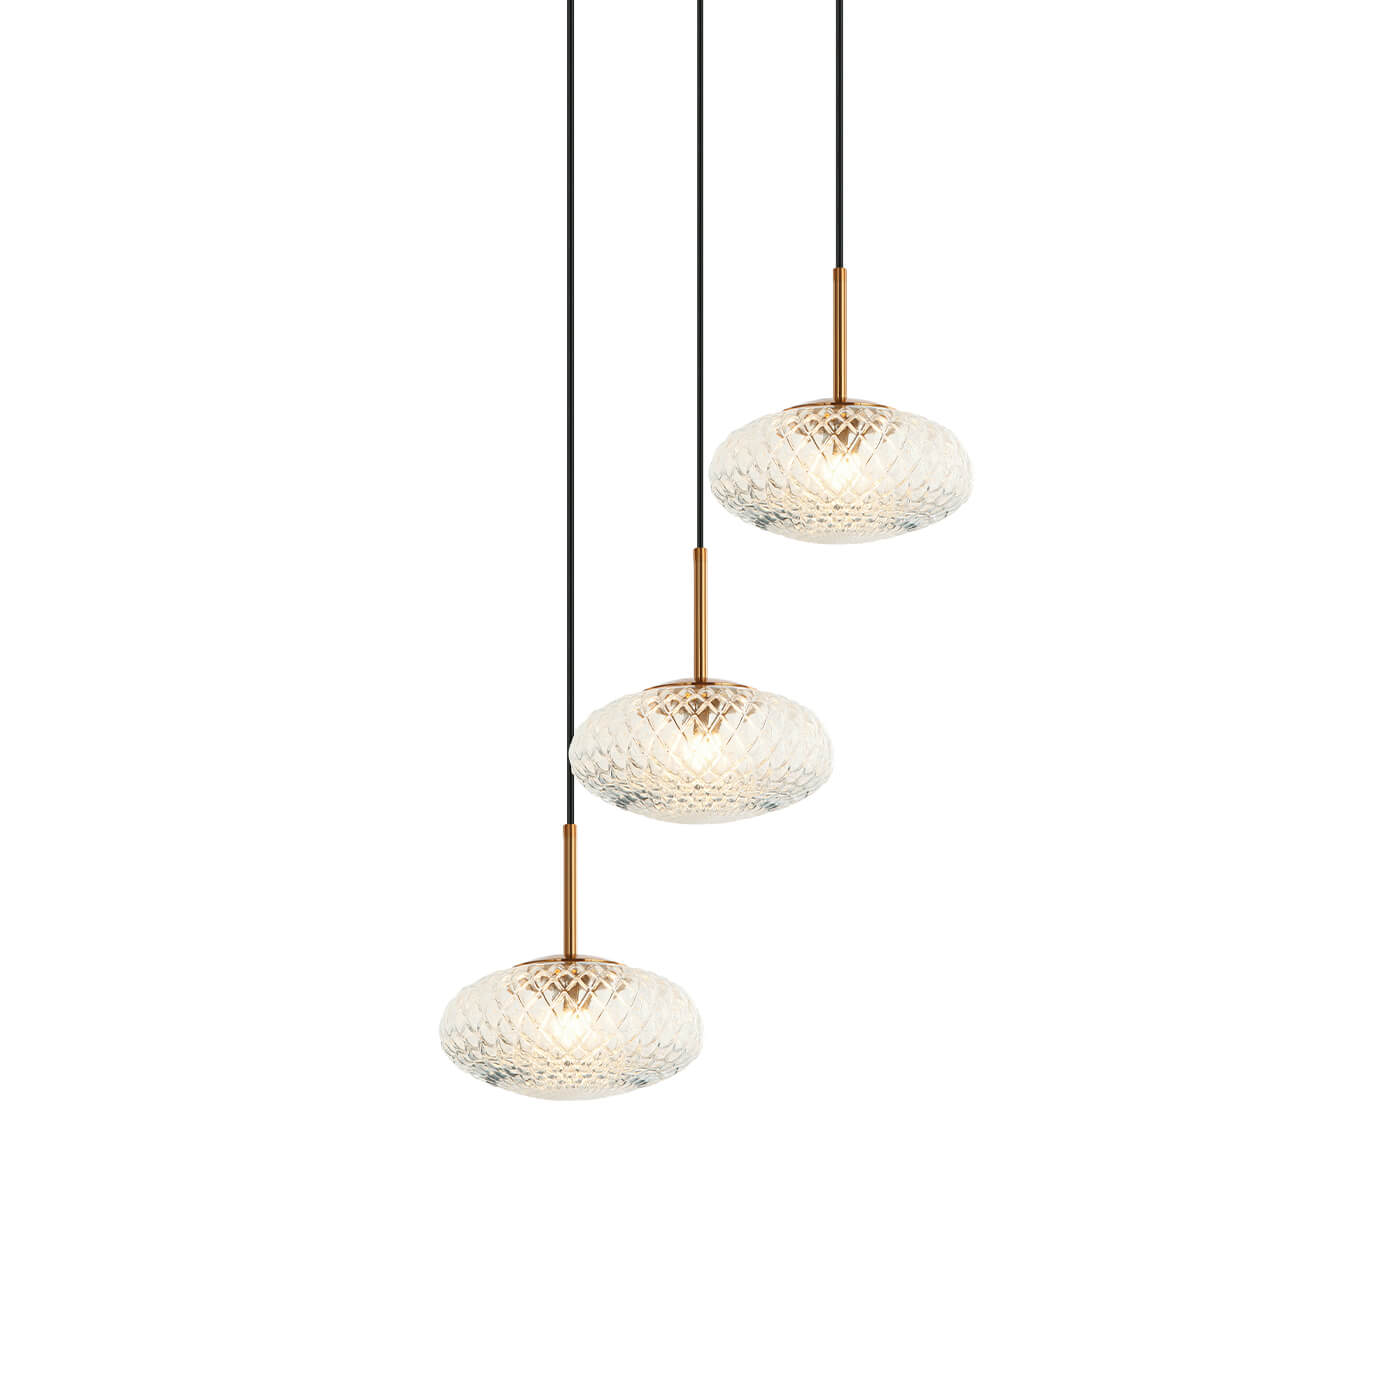 Cauti o lampa suspendata ESTER S3 din sticla pentru living, design modern, pentru living, dining sau dormitor din colectia de lustre si candelabre Domicilio?